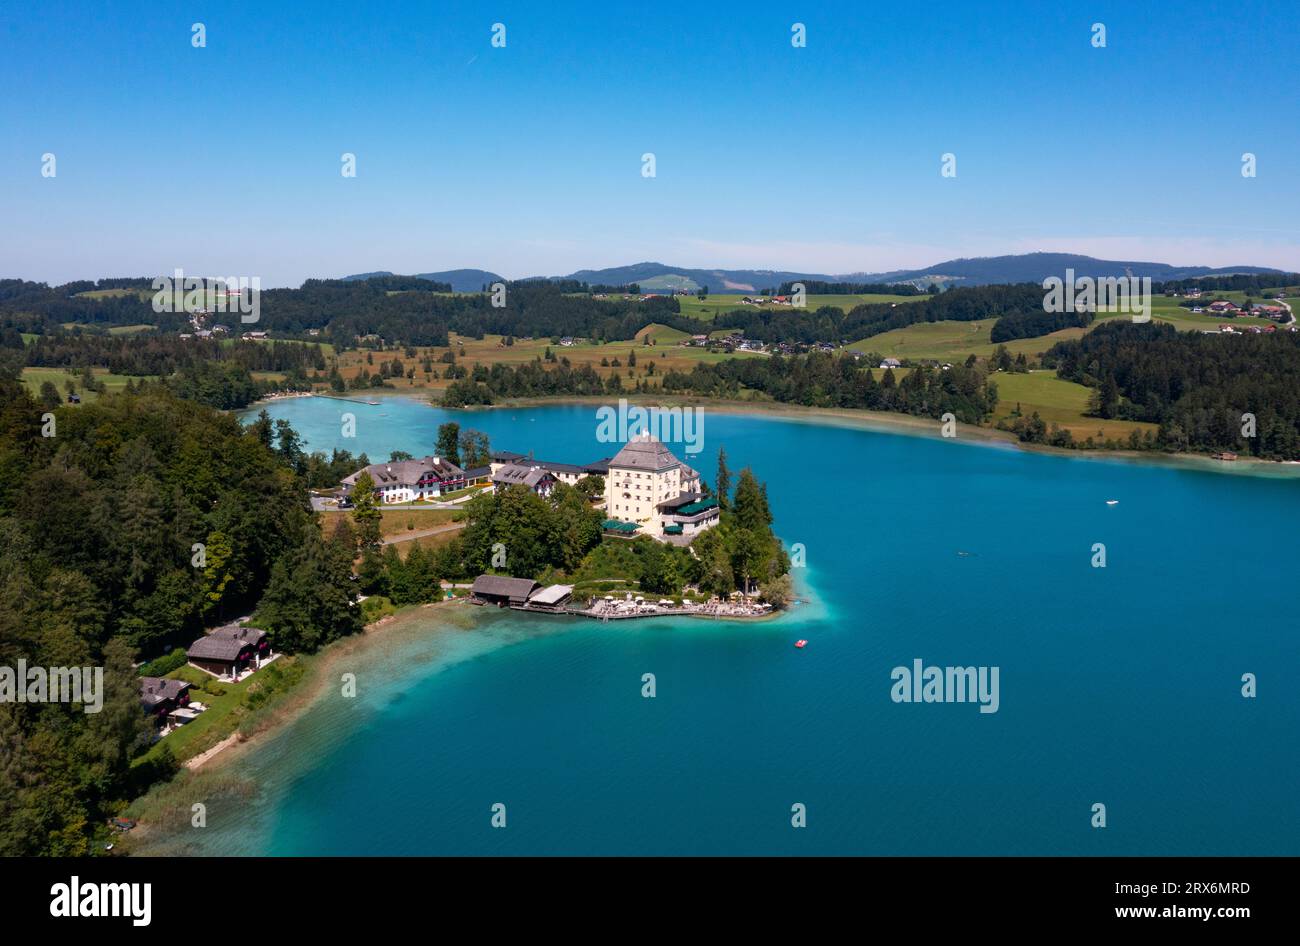 Austria, Salzburger Land, Fuschl am See, Drone view of Fuschl Lake and Schloss Fuschl in summer Stock Photo